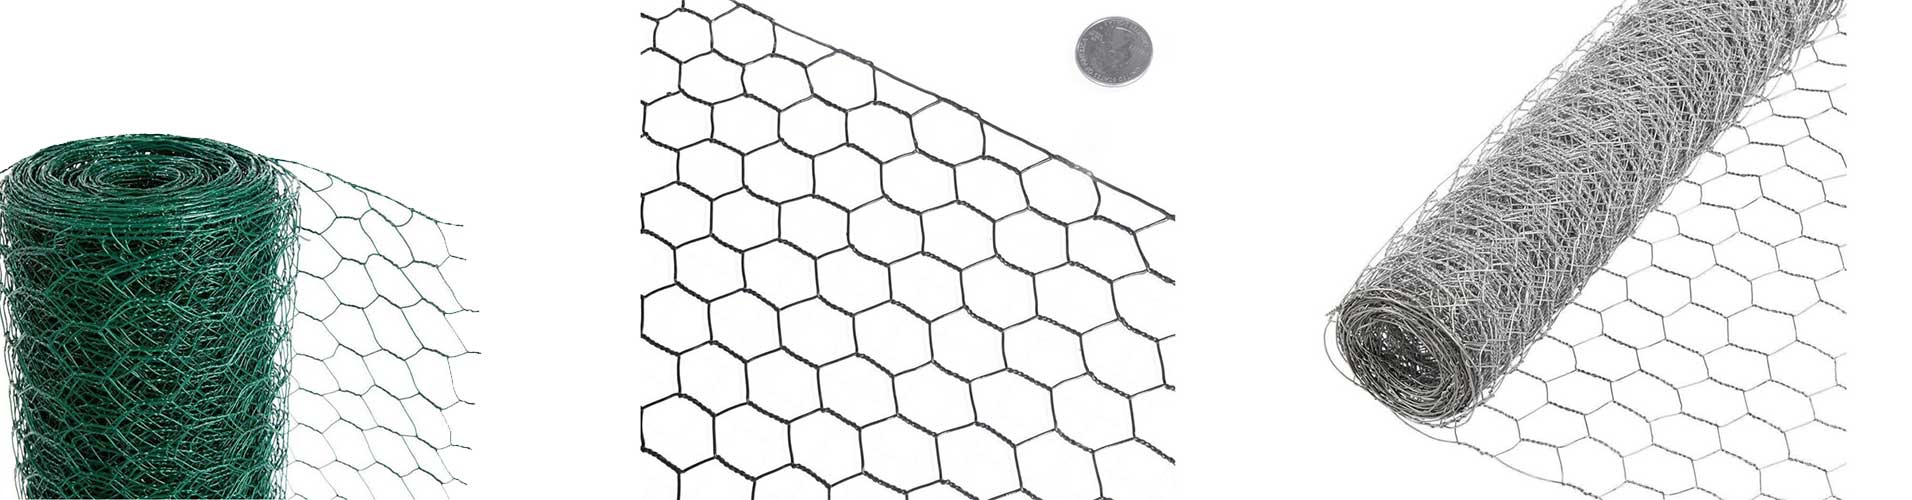 Hexagonal Wire Netting